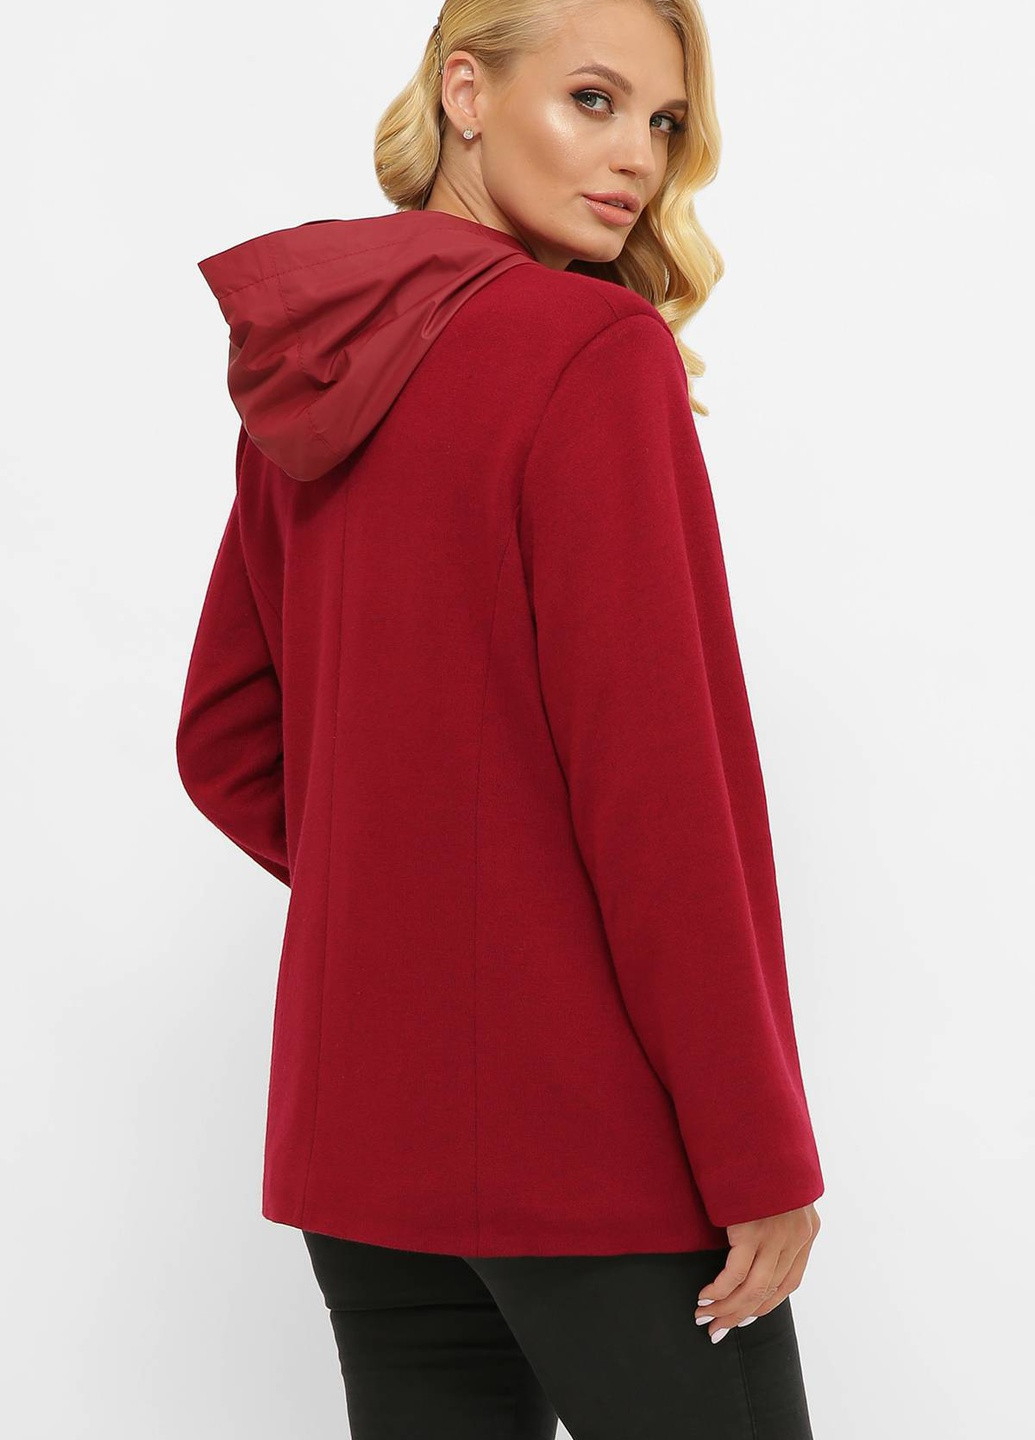 Красная зимняя легкая куртка из ангоры санти красная Tatiana